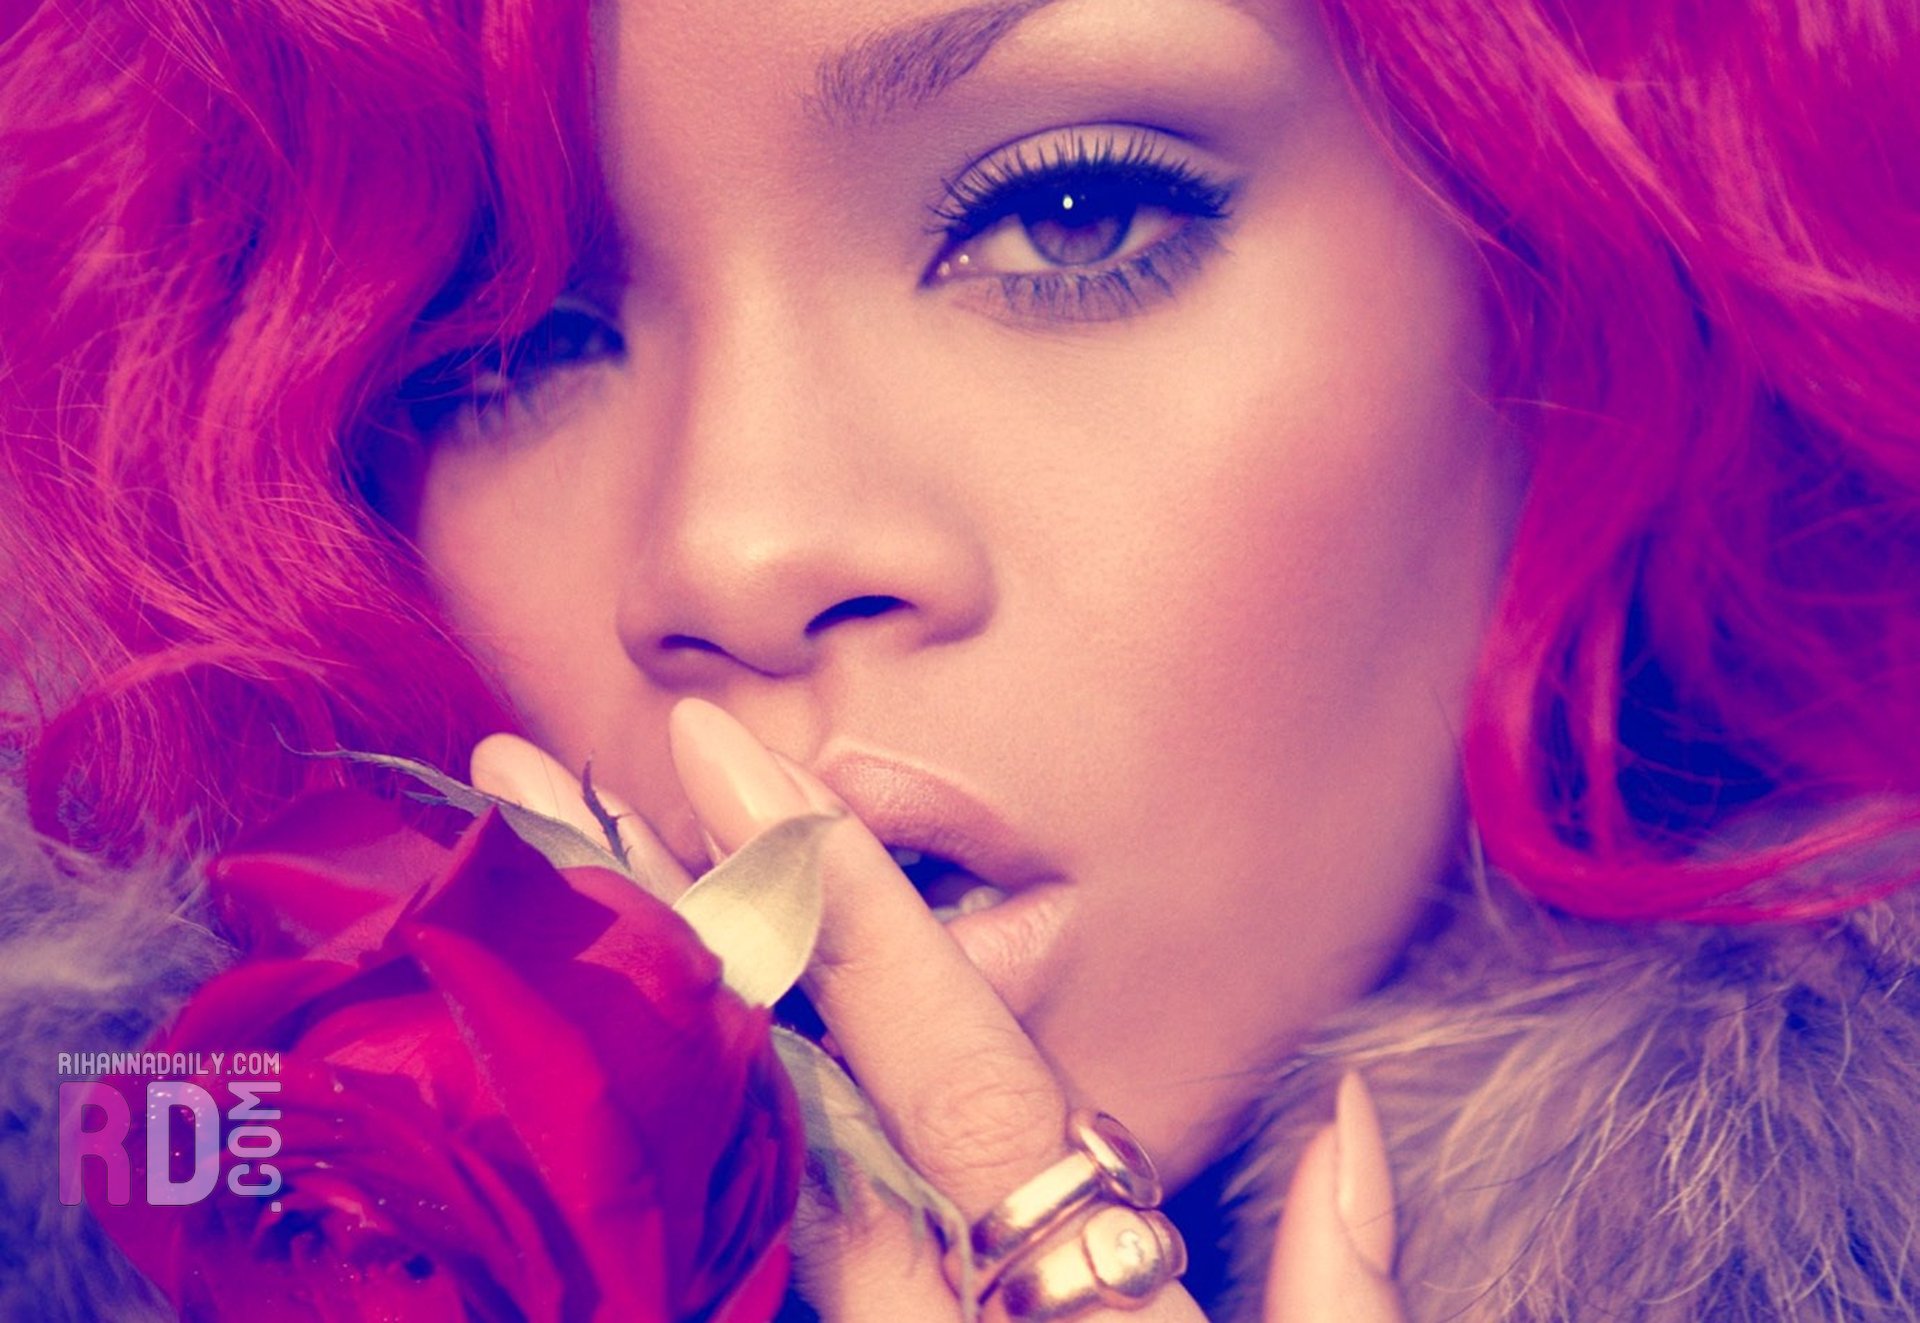 women, Rihanna, pink hair, singers, faces - desktop wallpaper